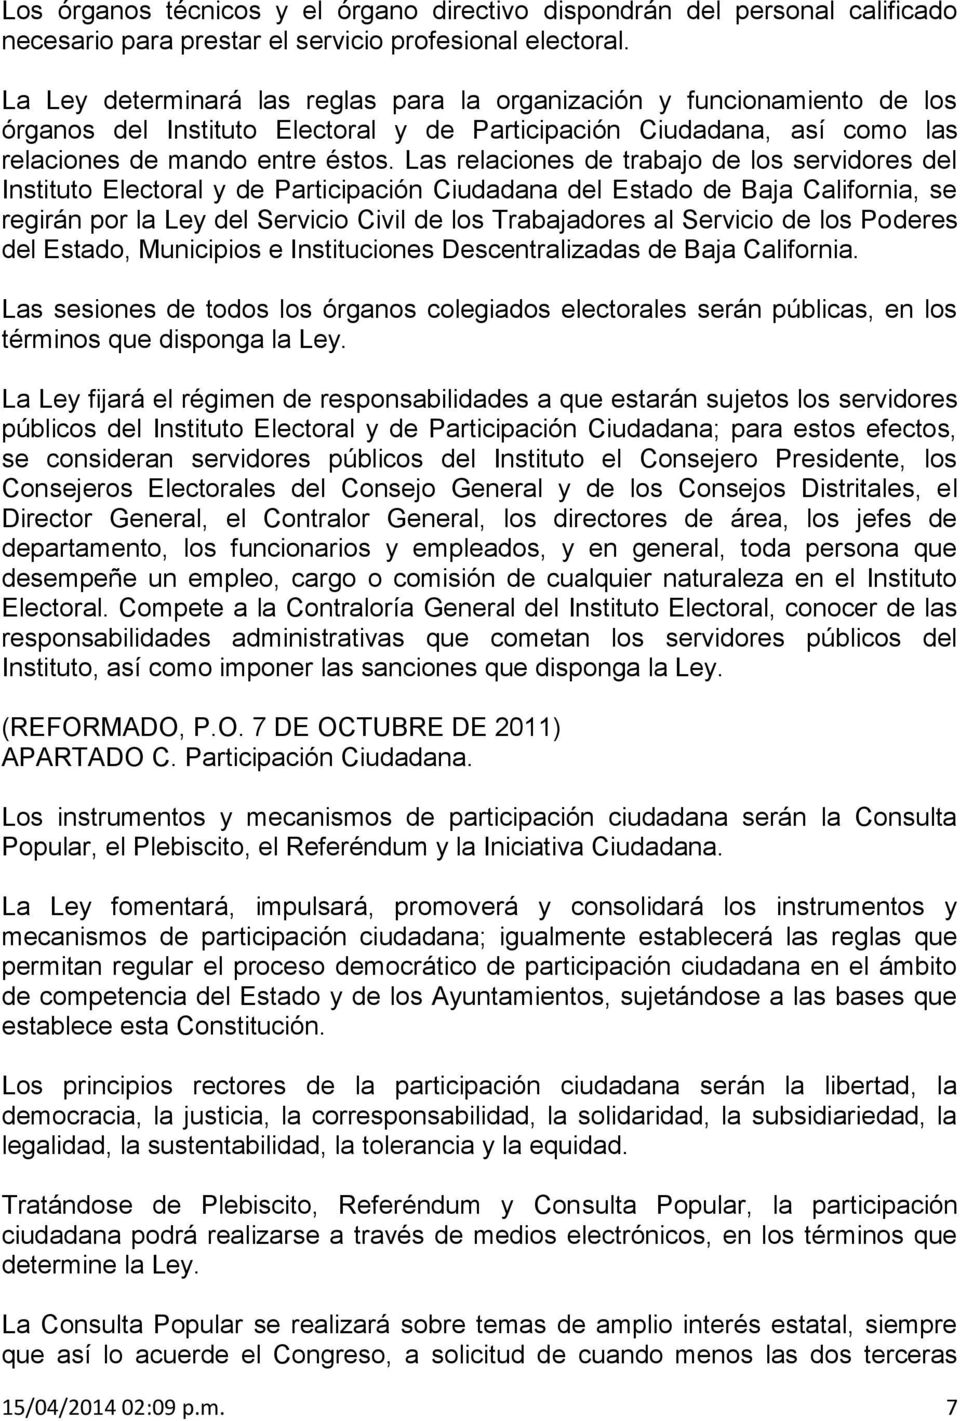 Las relaciones de trabajo de los servidores del Instituto Electoral y de Participación Ciudadana del Estado de Baja California, se regirán por la Ley del Servicio Civil de los Trabajadores al